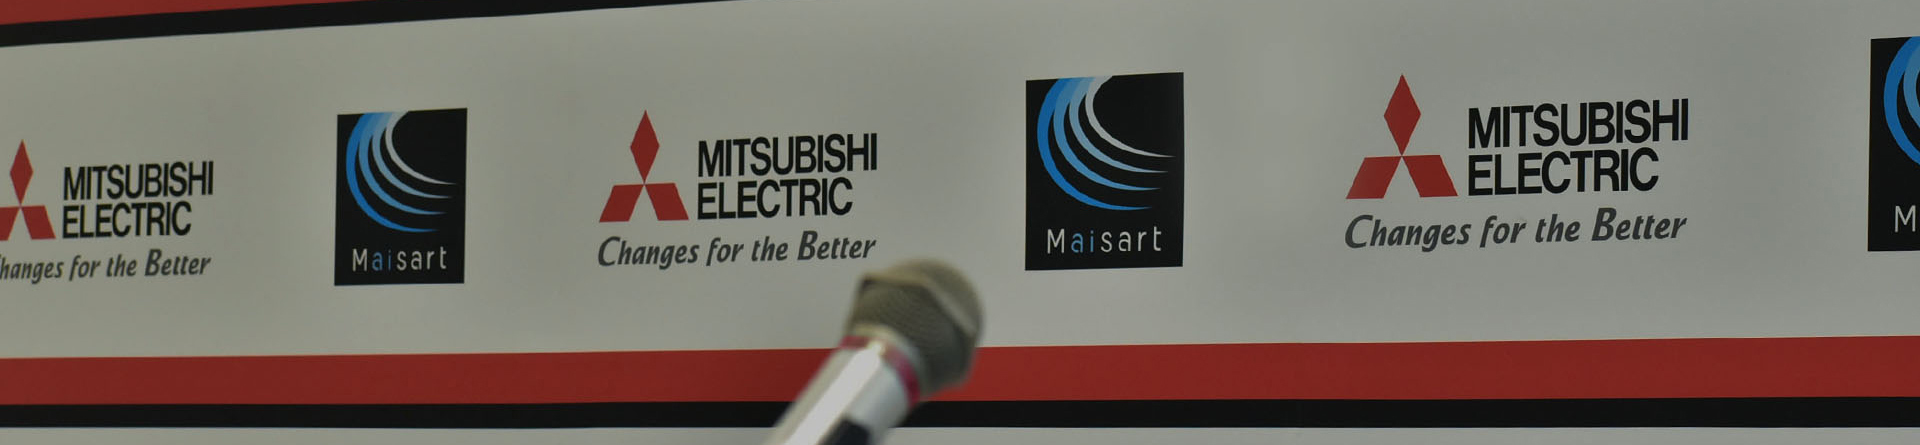 Hệ thống kinh doanh Thiết bị Tự động hóa Mitsubishi Electric chính thức ra mắt khẩu hiệu toàn cầu “Automating the World” 